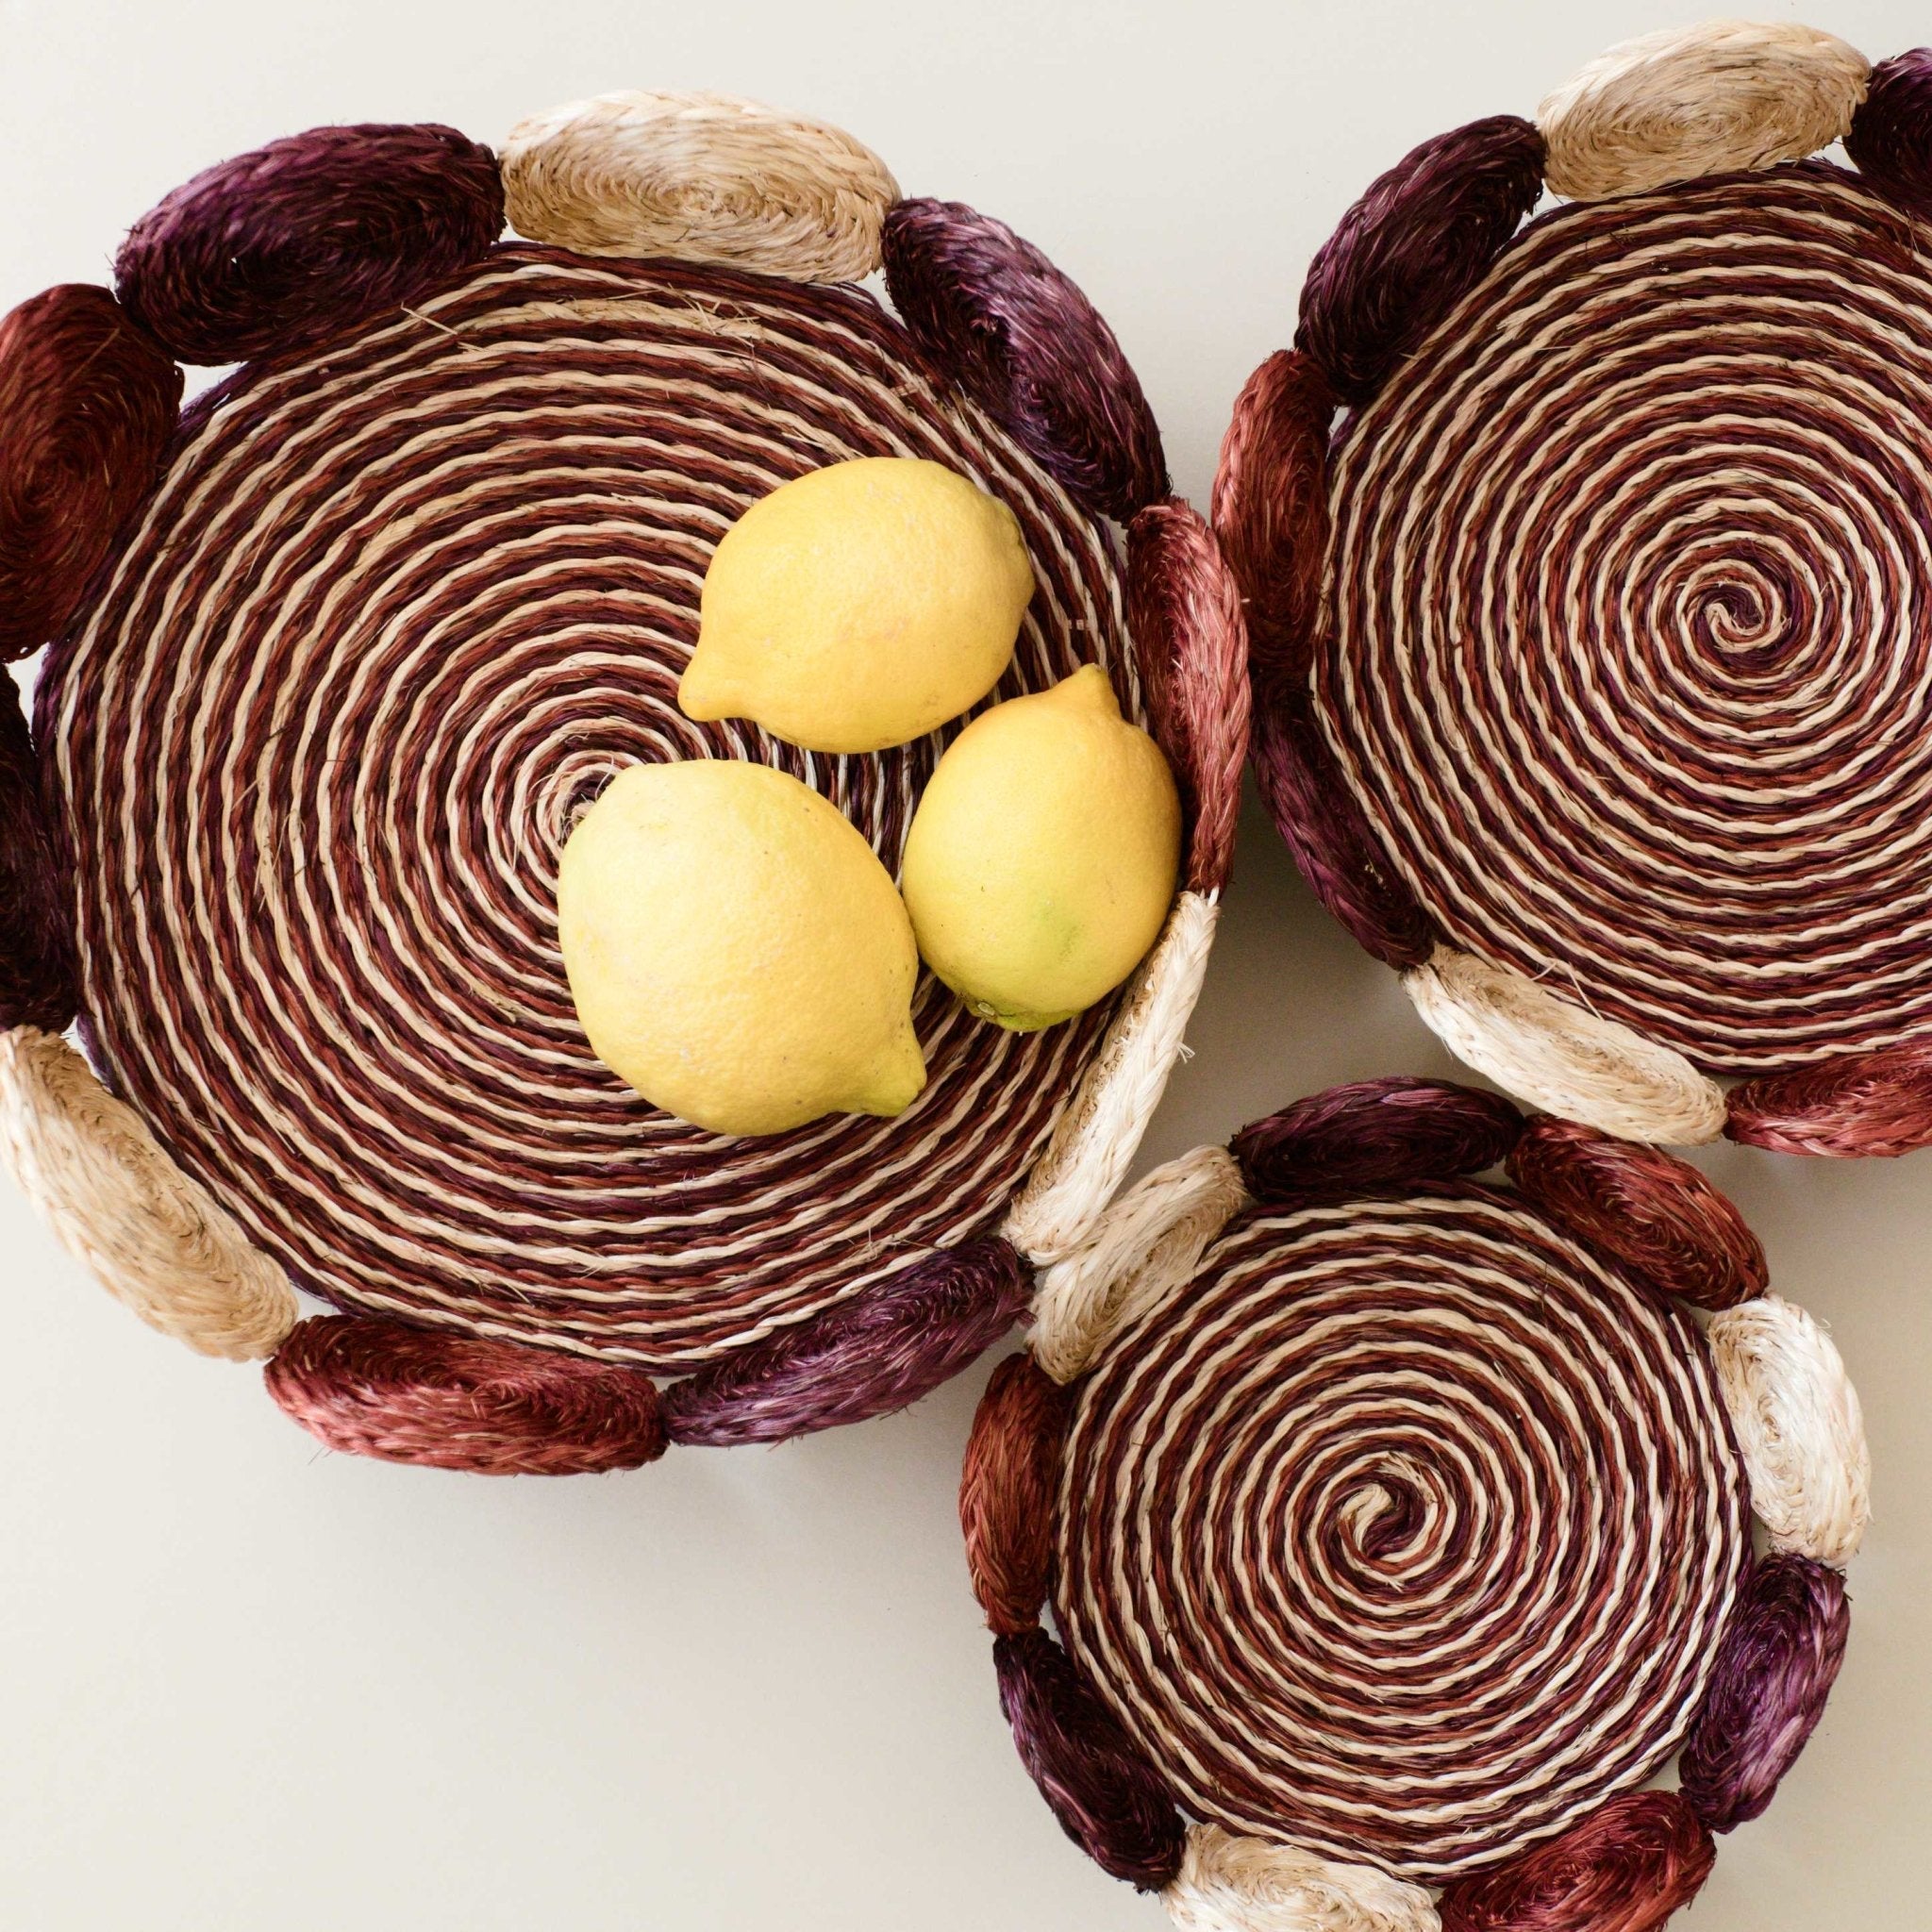 Natural Woven Fruit Basket - Storage Basket, set of 3 | LIKHÂ